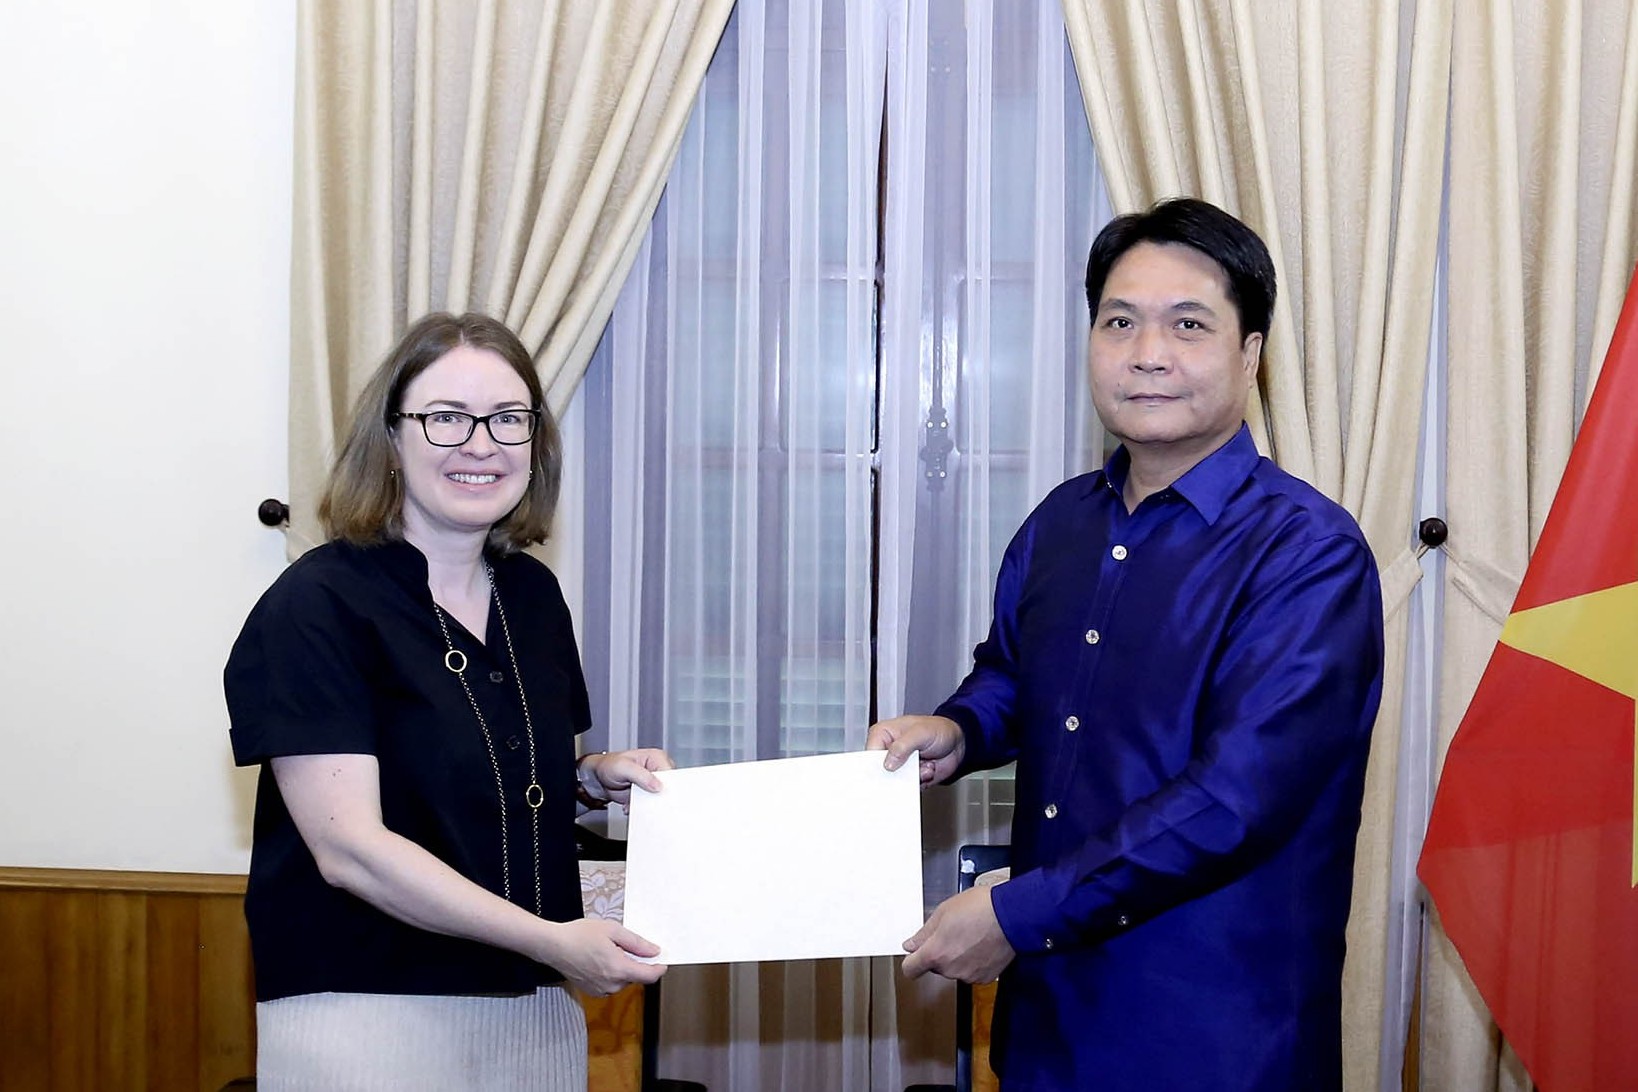 Cục Lễ tân Nhà nước tiếp nhận bản sao Thư ủy nhiệm bổ nhiệm Đại sứ Ireland tại Việt Nam